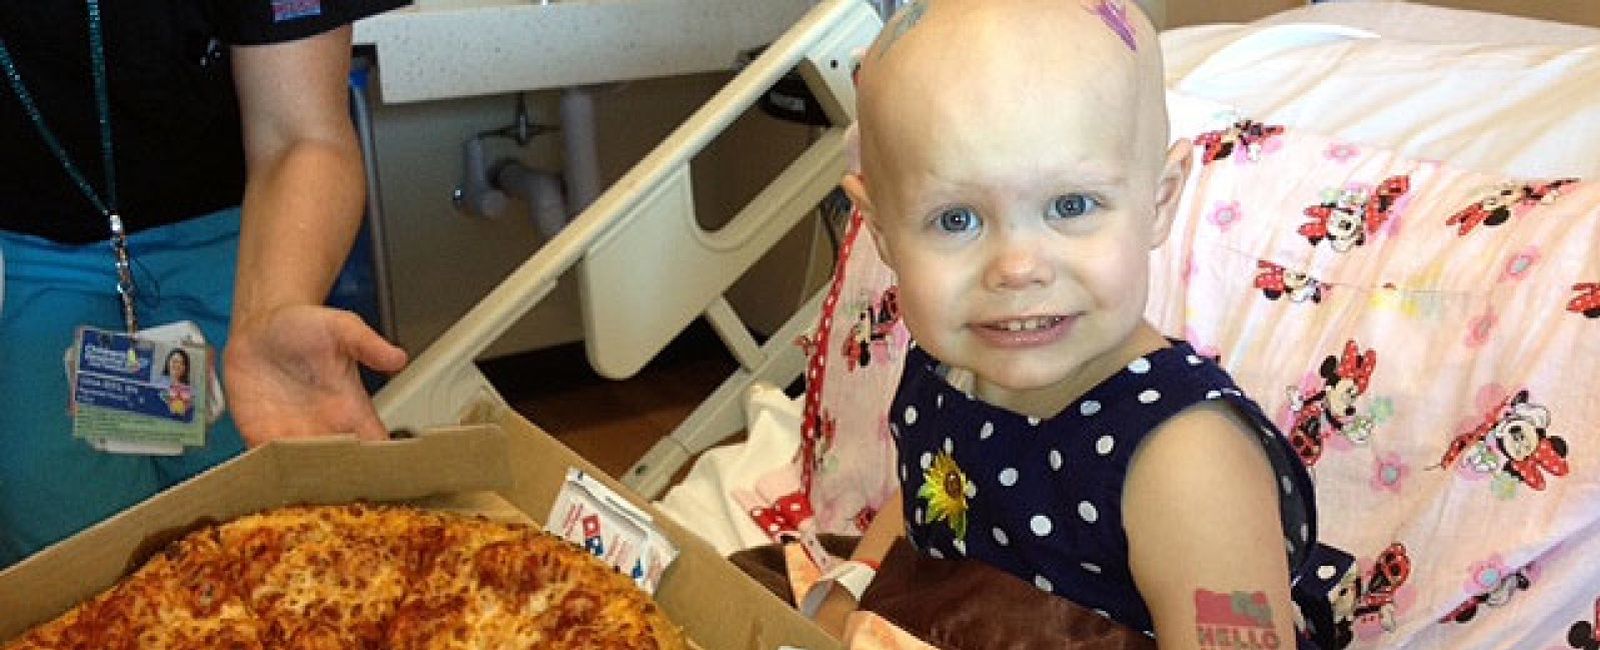 Foto: Una niña enferma pide una pizza e internet le envía cientos de ellas